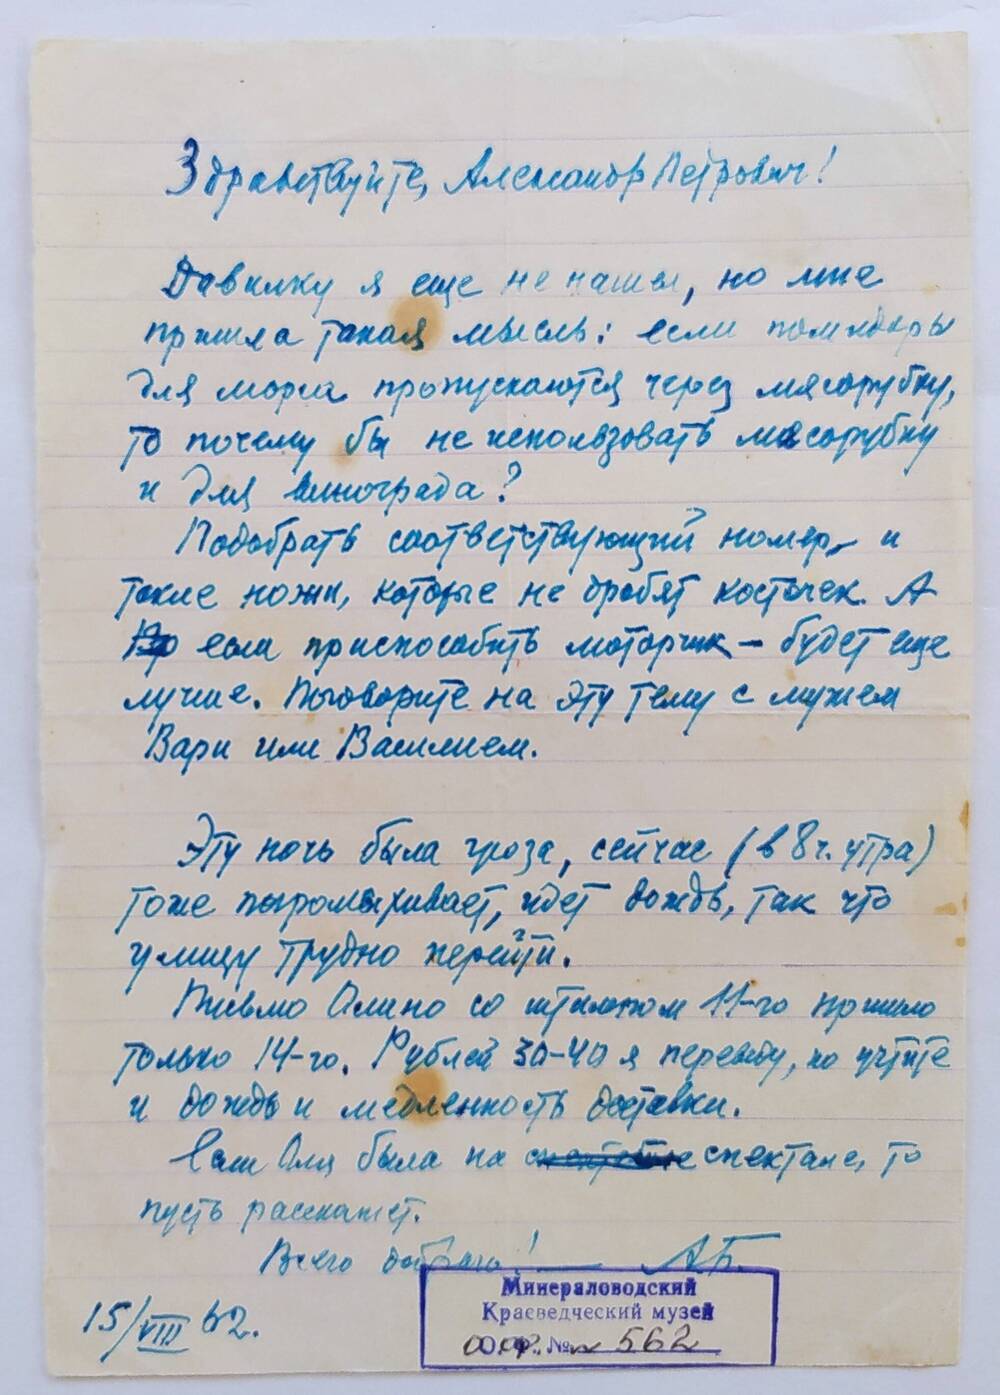 Письмо к Александру Петровичу от А.П. Бибика, датировано 15/VIII.62 г., написано чернильной ручкой синего цвета на тетрадном листе в линию.